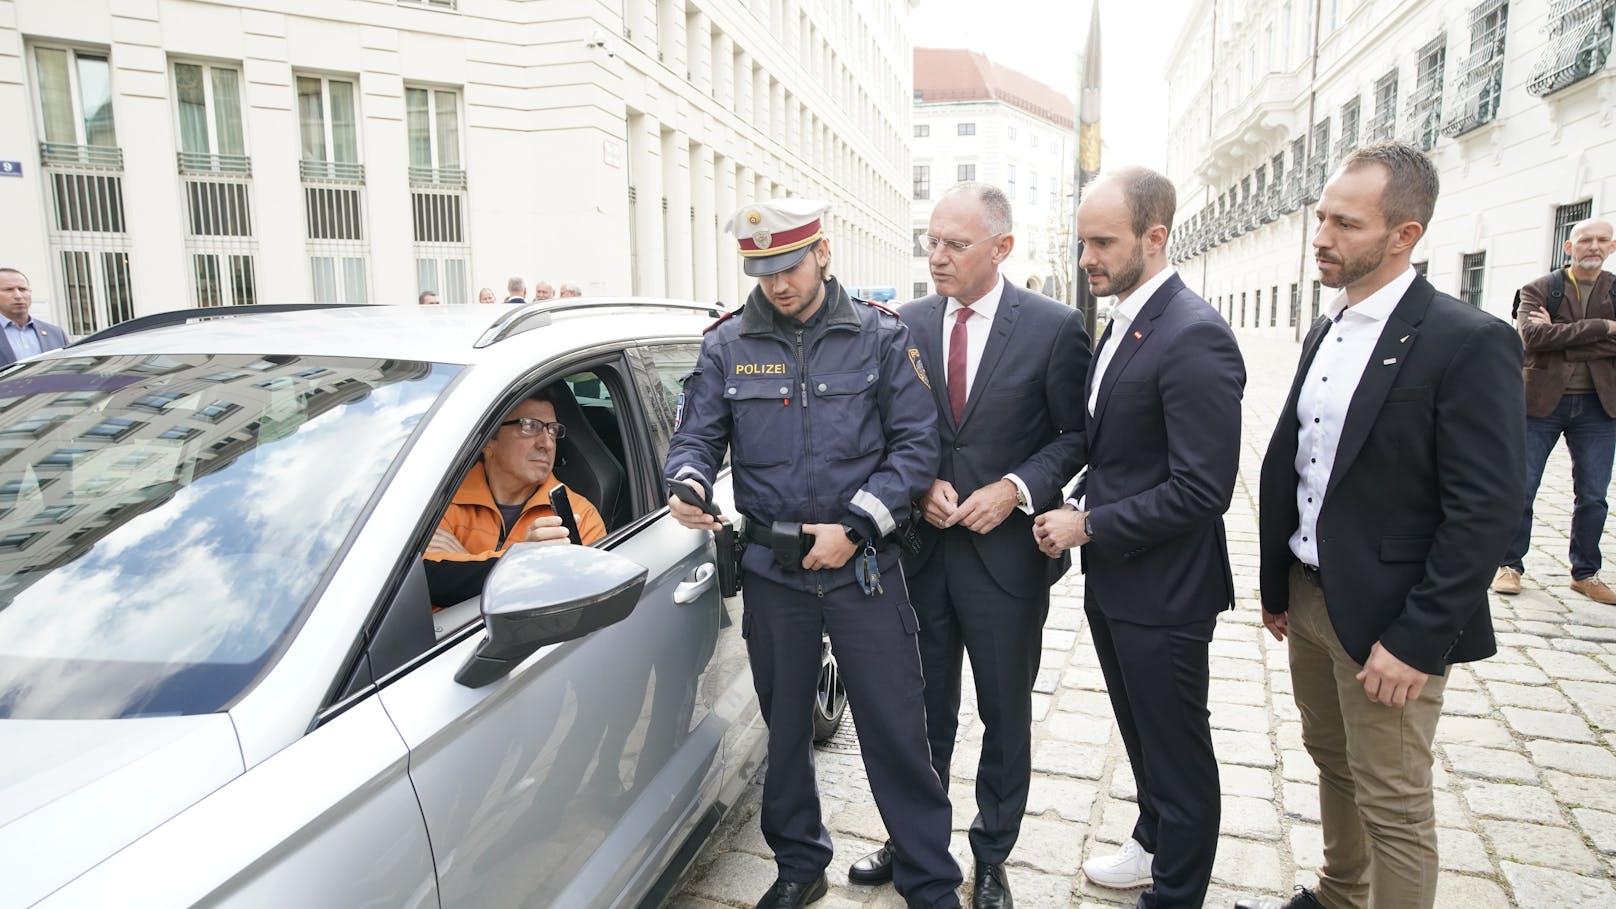 Turksy und Karner zeigten eine Polizeikontrolle des E-Führerschein vor.